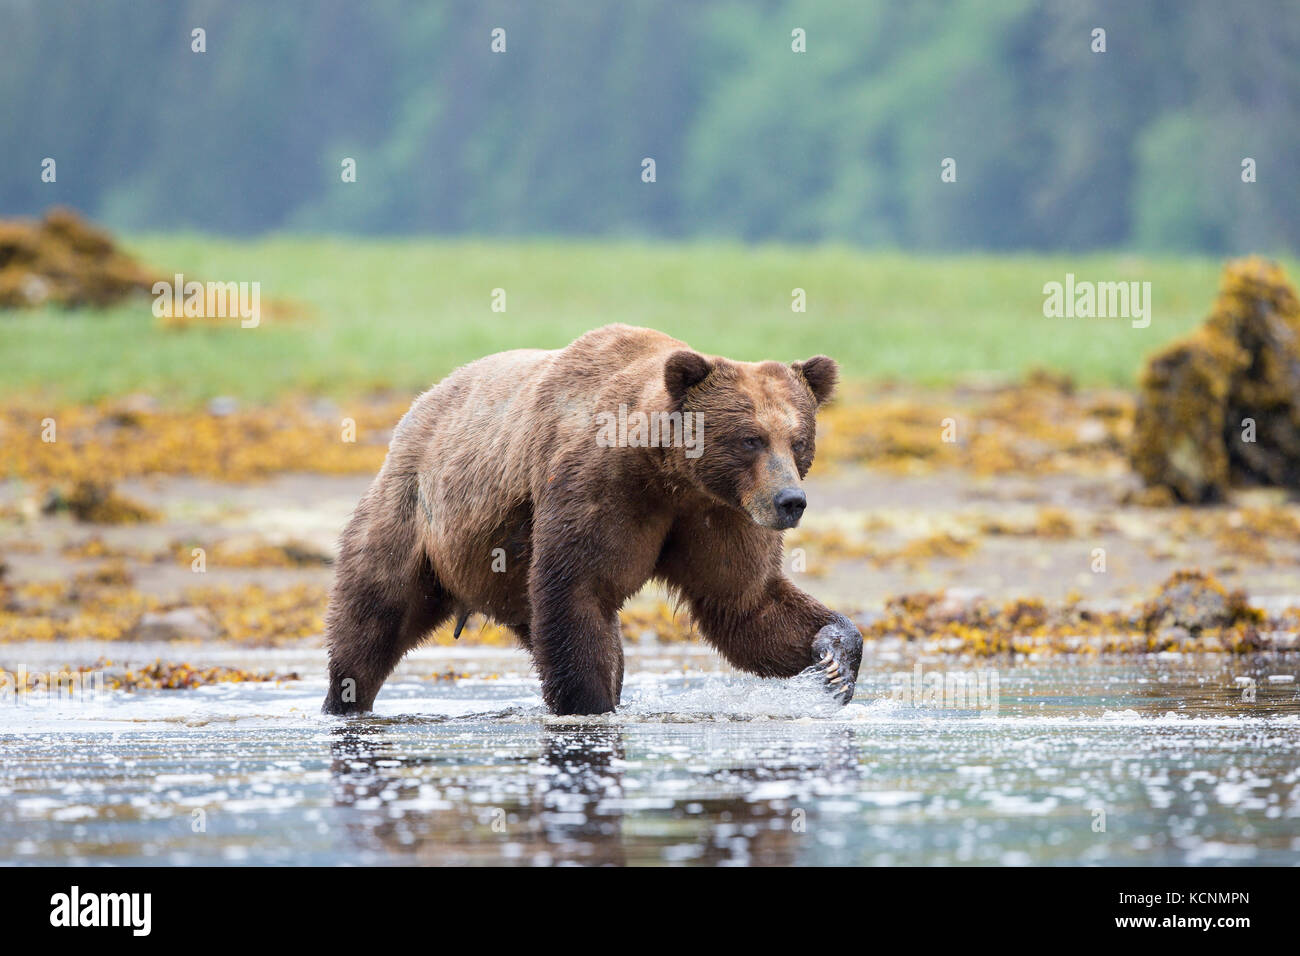 Grizzly bear (Ursus arctos horribilis), large male, Khutzeymateen Inlet, Khutzeymateen Grizzly Bear Sanctuary, British Columbia, Canada. Stock Photo